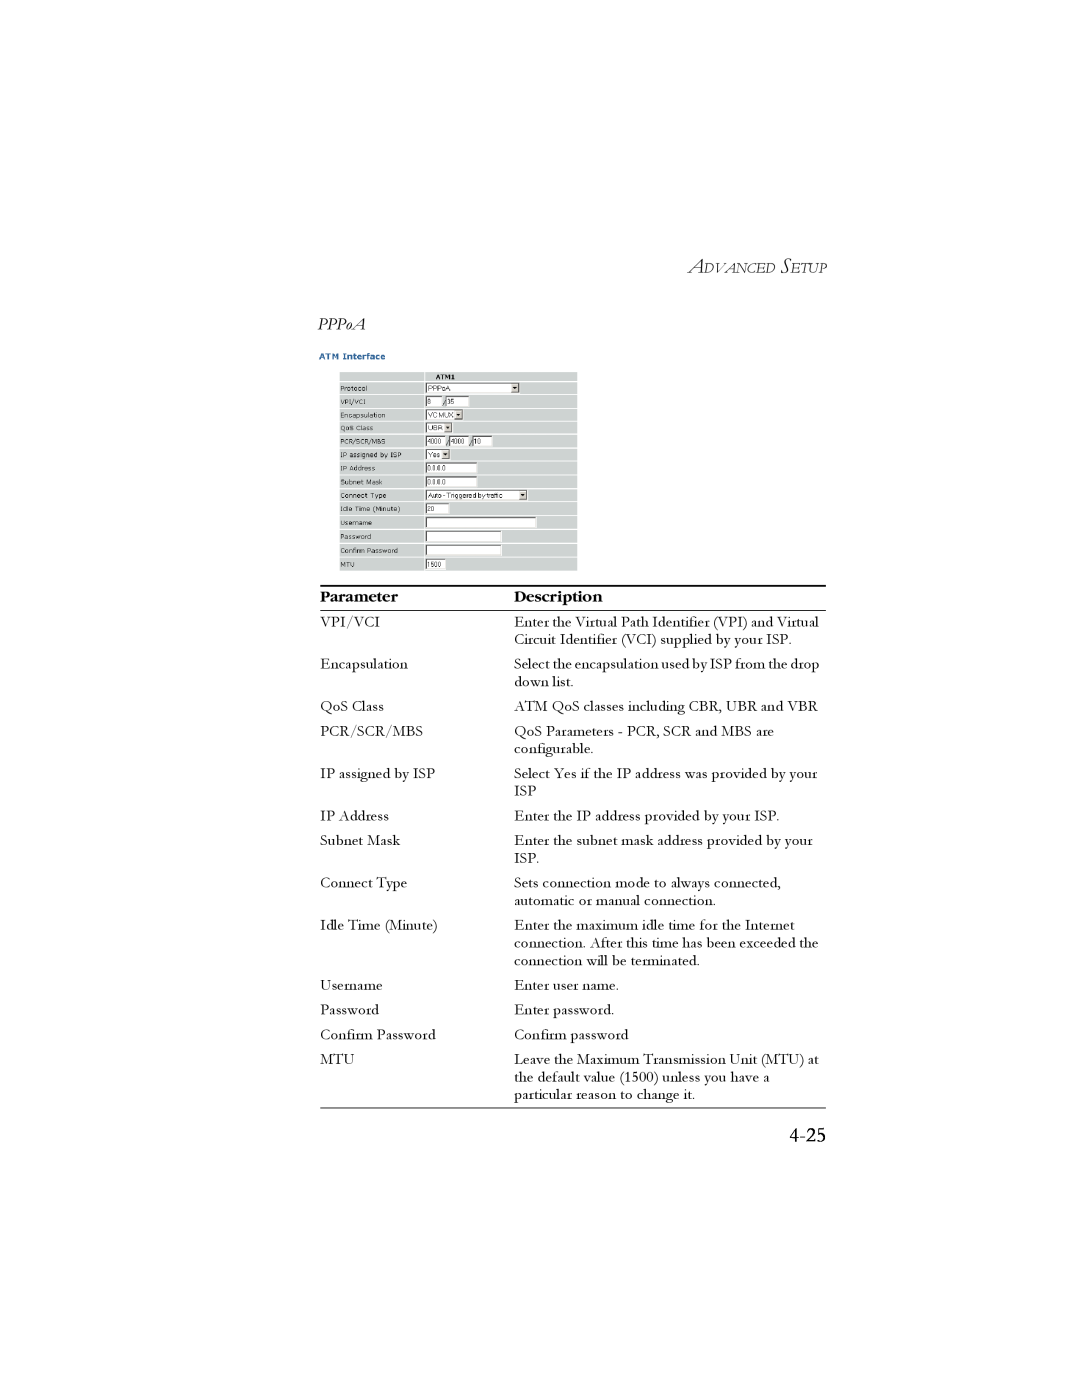 SMC Networks SMC7908VoWBRA manual 4-25, PPPoA, Parameter, Description 